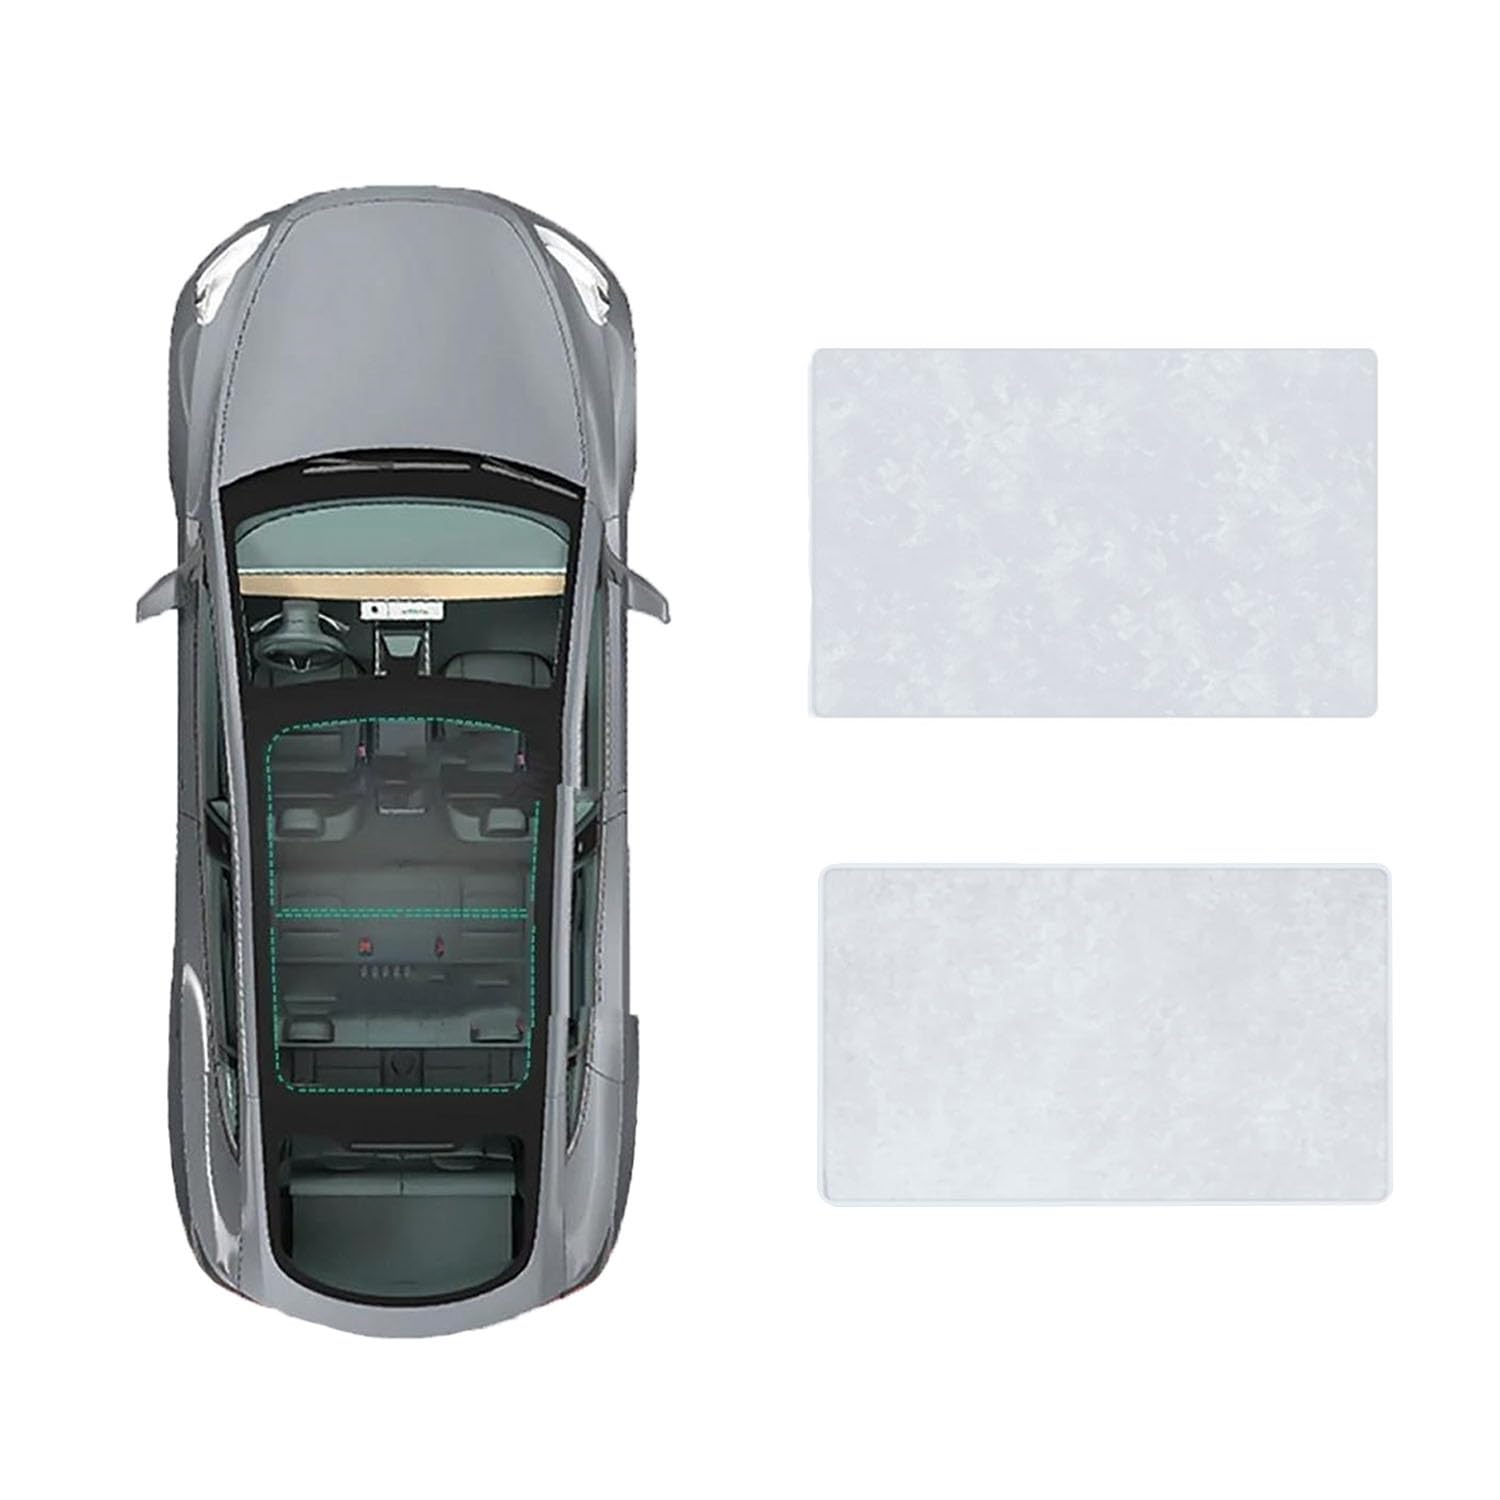 Auto Schiebedach Sonnenschirm Vorhang Für Mercedes Benz V-Class 2016-,UV-Schutz Schattierung vorne Heckscheibe Sonnenschutz,B-Gray white Suede von JiAQen